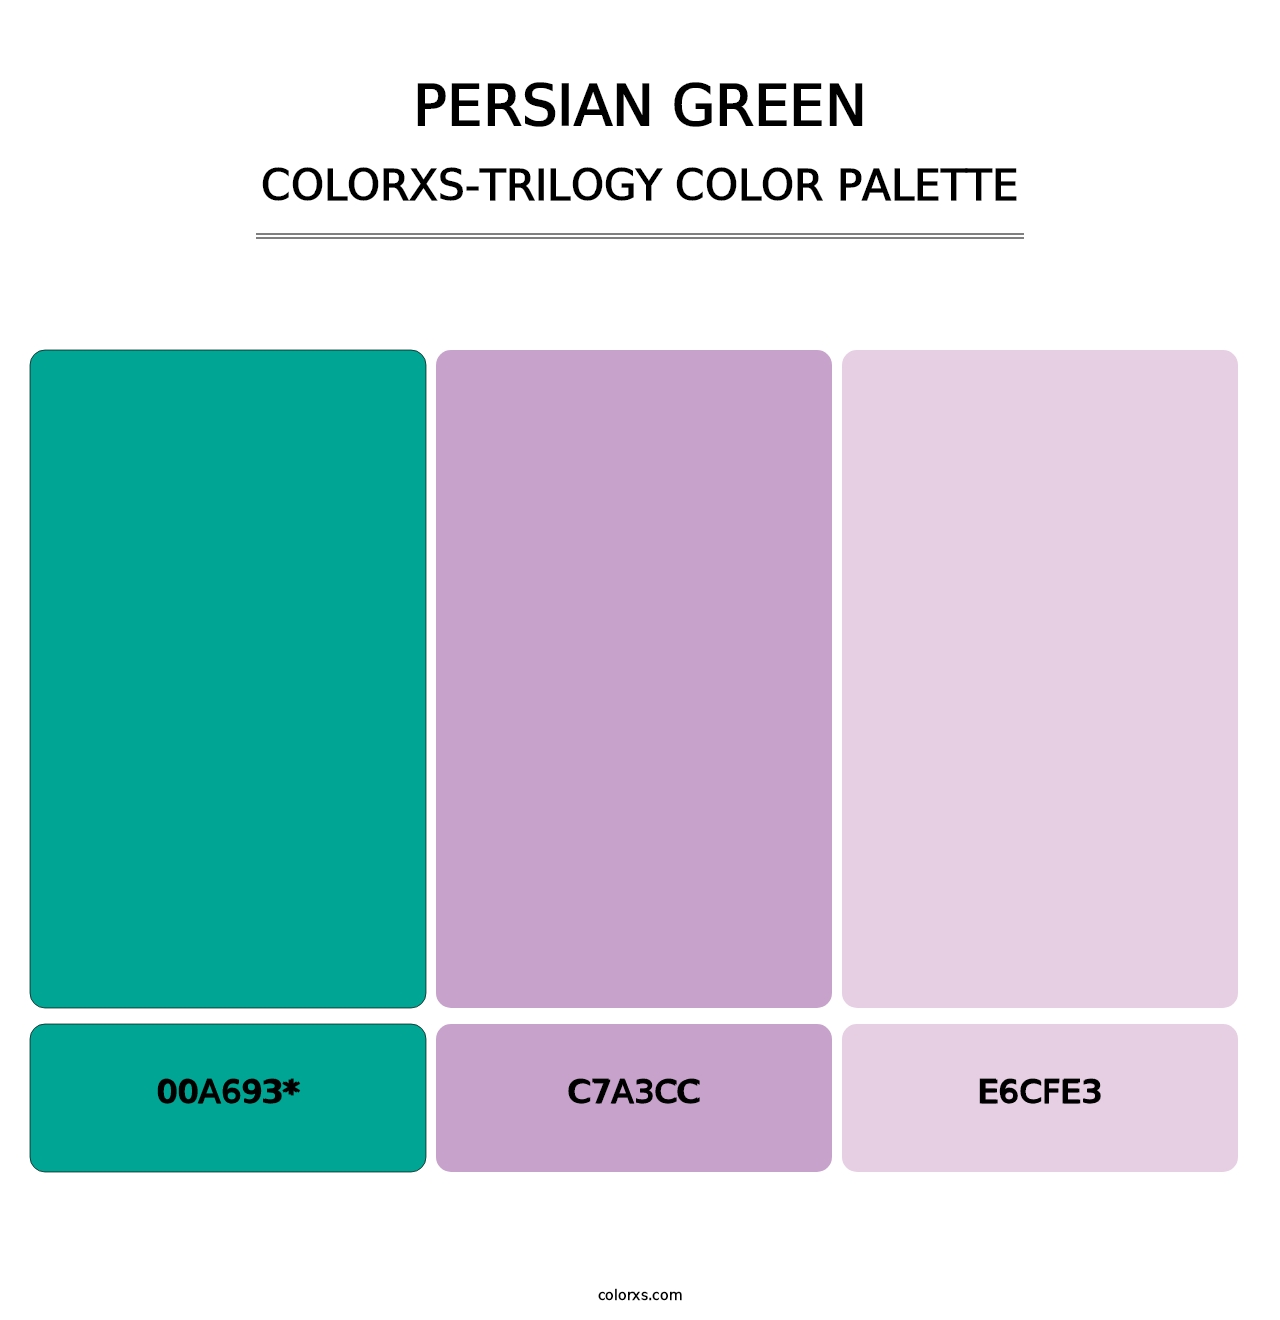 Persian Green - Colorxs Trilogy Palette